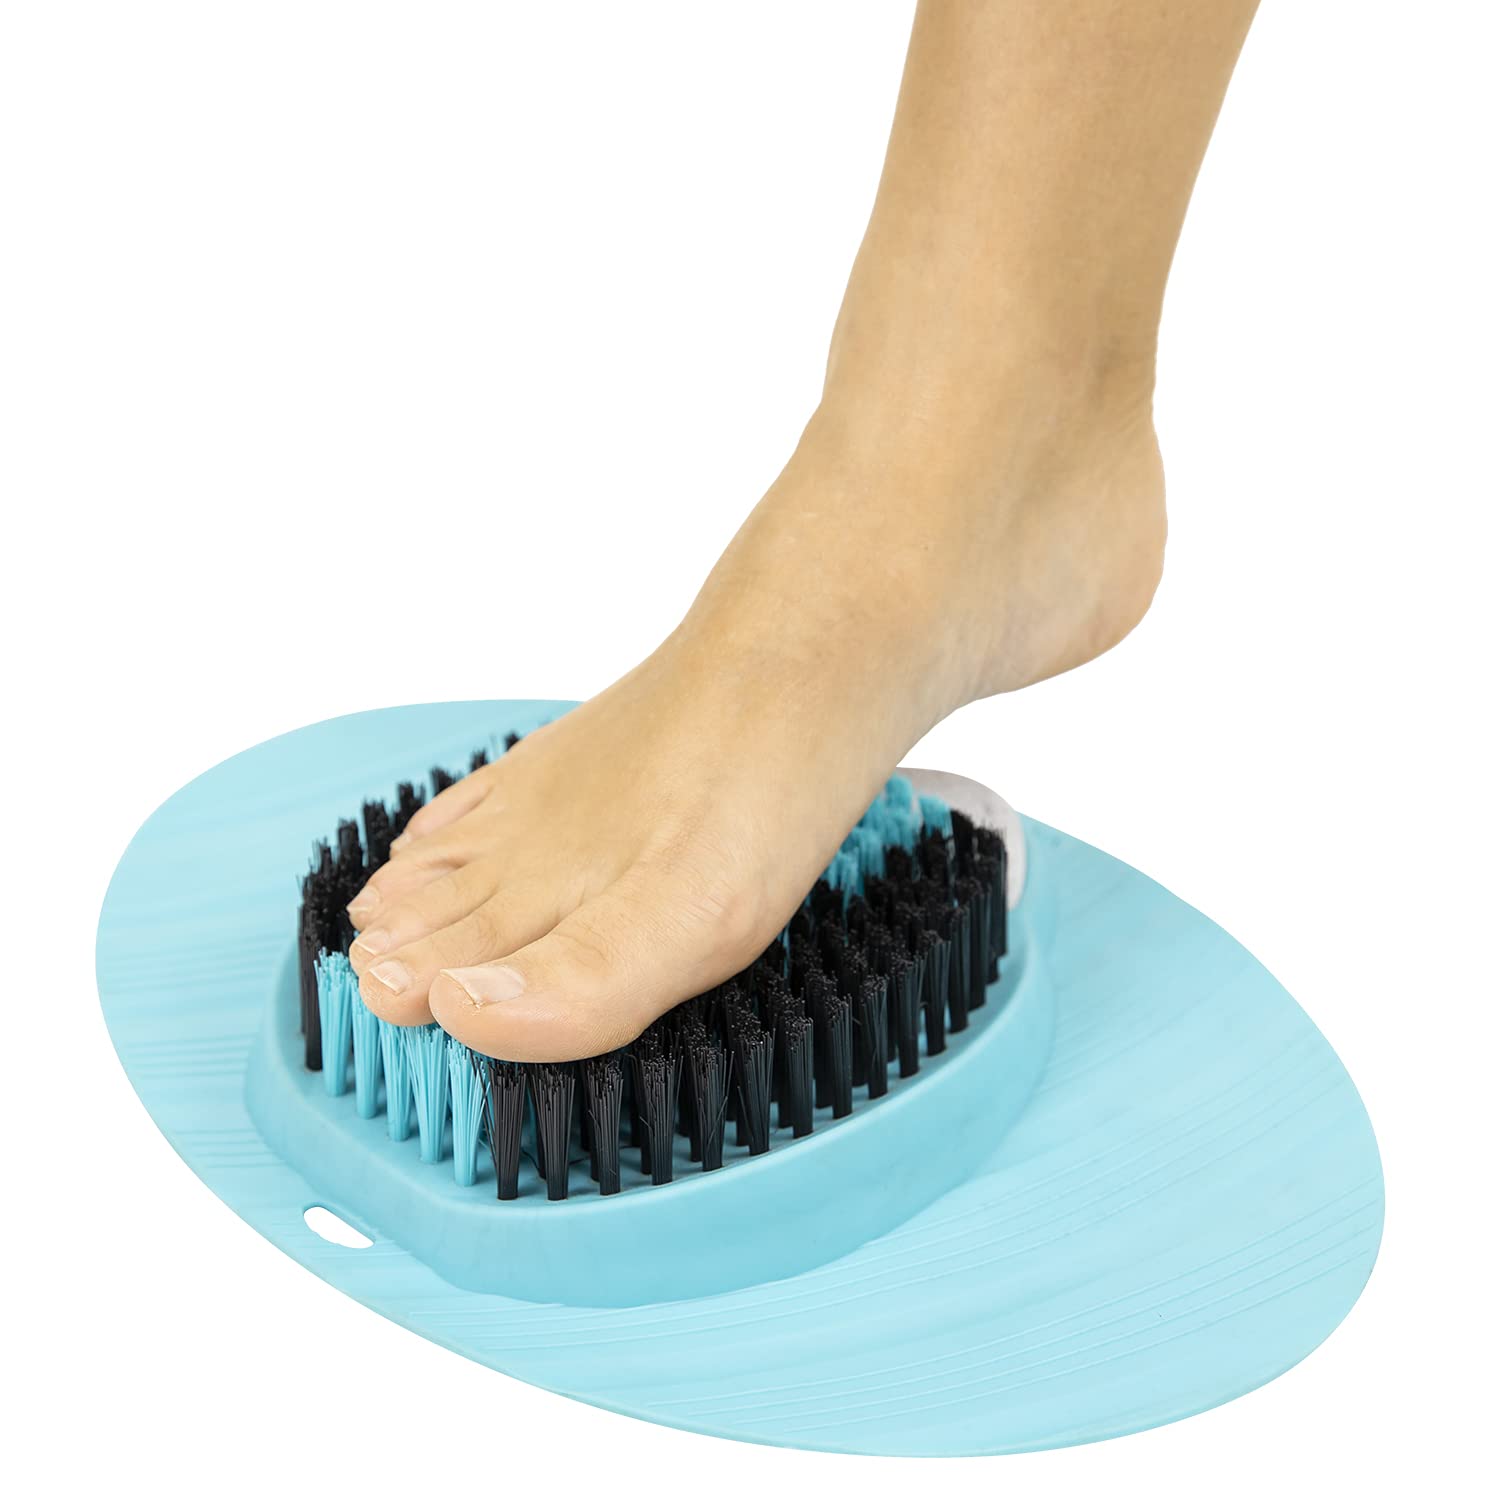 As Seen On Tv Easy Feet Cleaner Slipper @ Best Price Online | Jumia Egypt